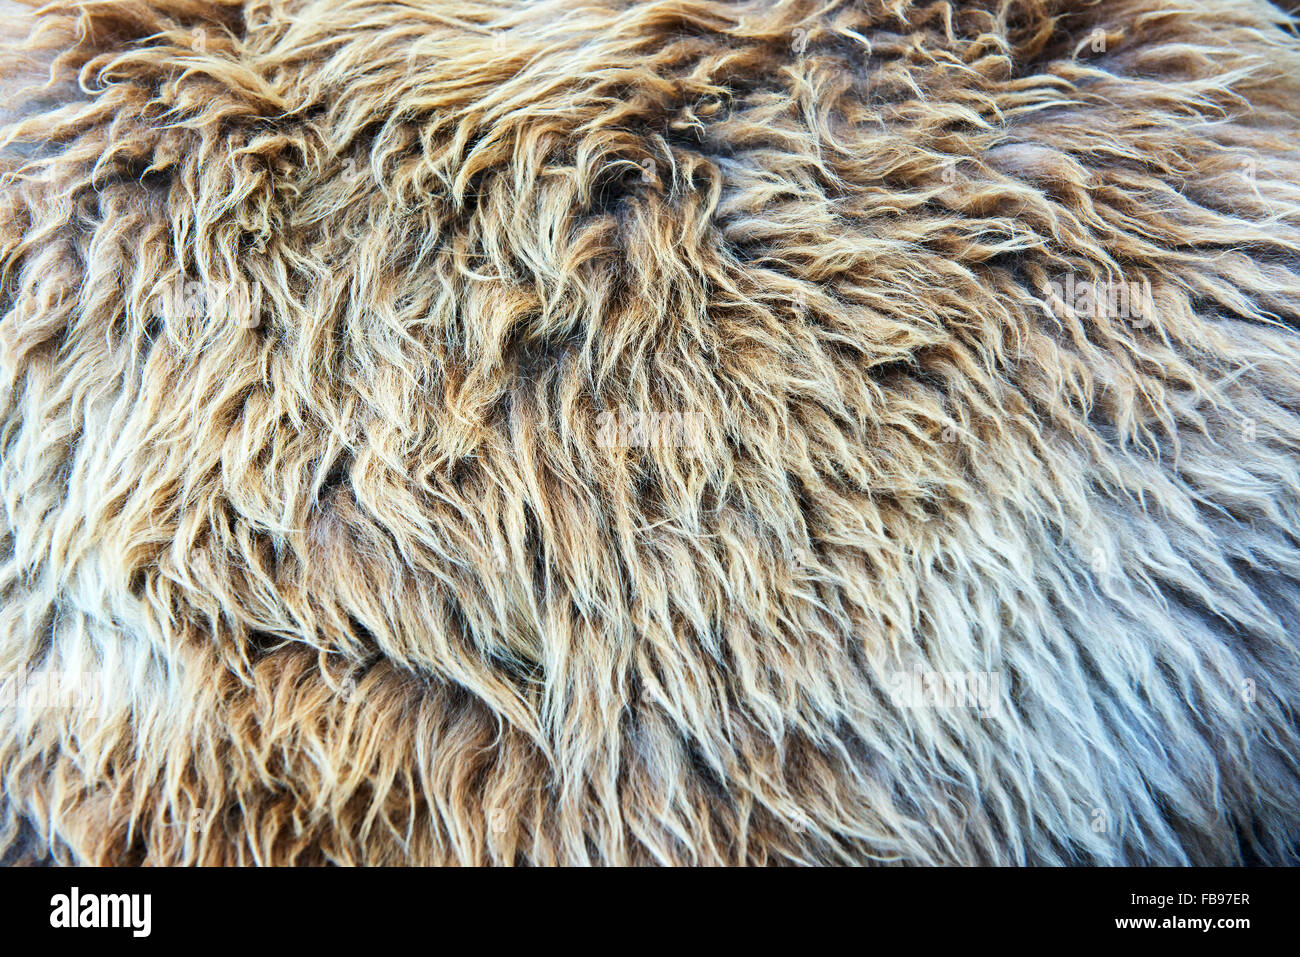 Gros plan de la texture de la fourrure avec des cheveux hirsutes Banque D'Images